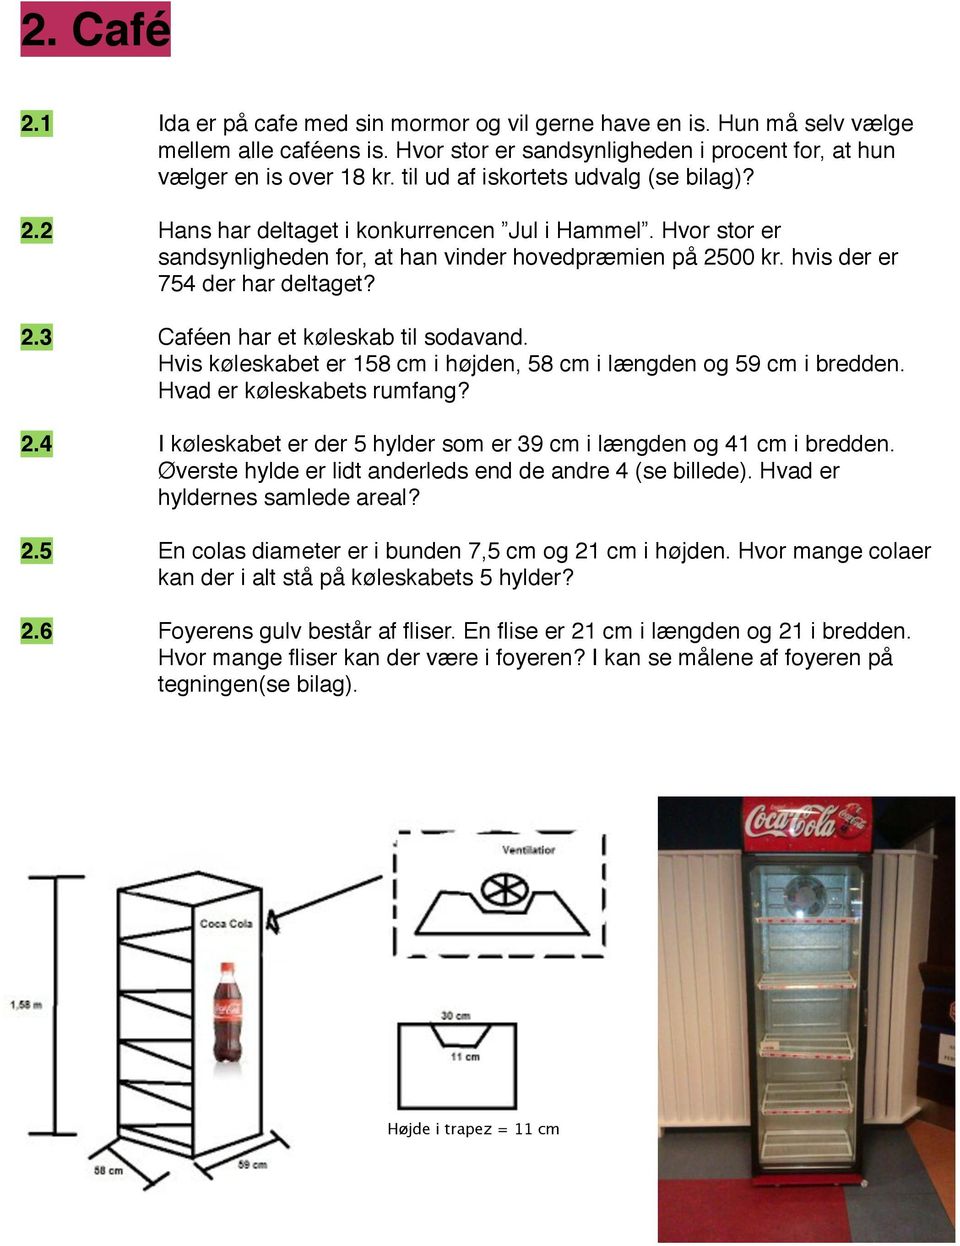 hvis der er " " " 754 der har deltaget? 2.3" " Caféen har et køleskab til sodavand. " " " Hvis køleskabet er 158 cm i højden, 58 cm i længden og 59 cm i bredden. " " " Hvad er køleskabets rumfang? 2.4" " I køleskabet er der 5 hylder som er 39 cm i længden og 41 cm i bredden.